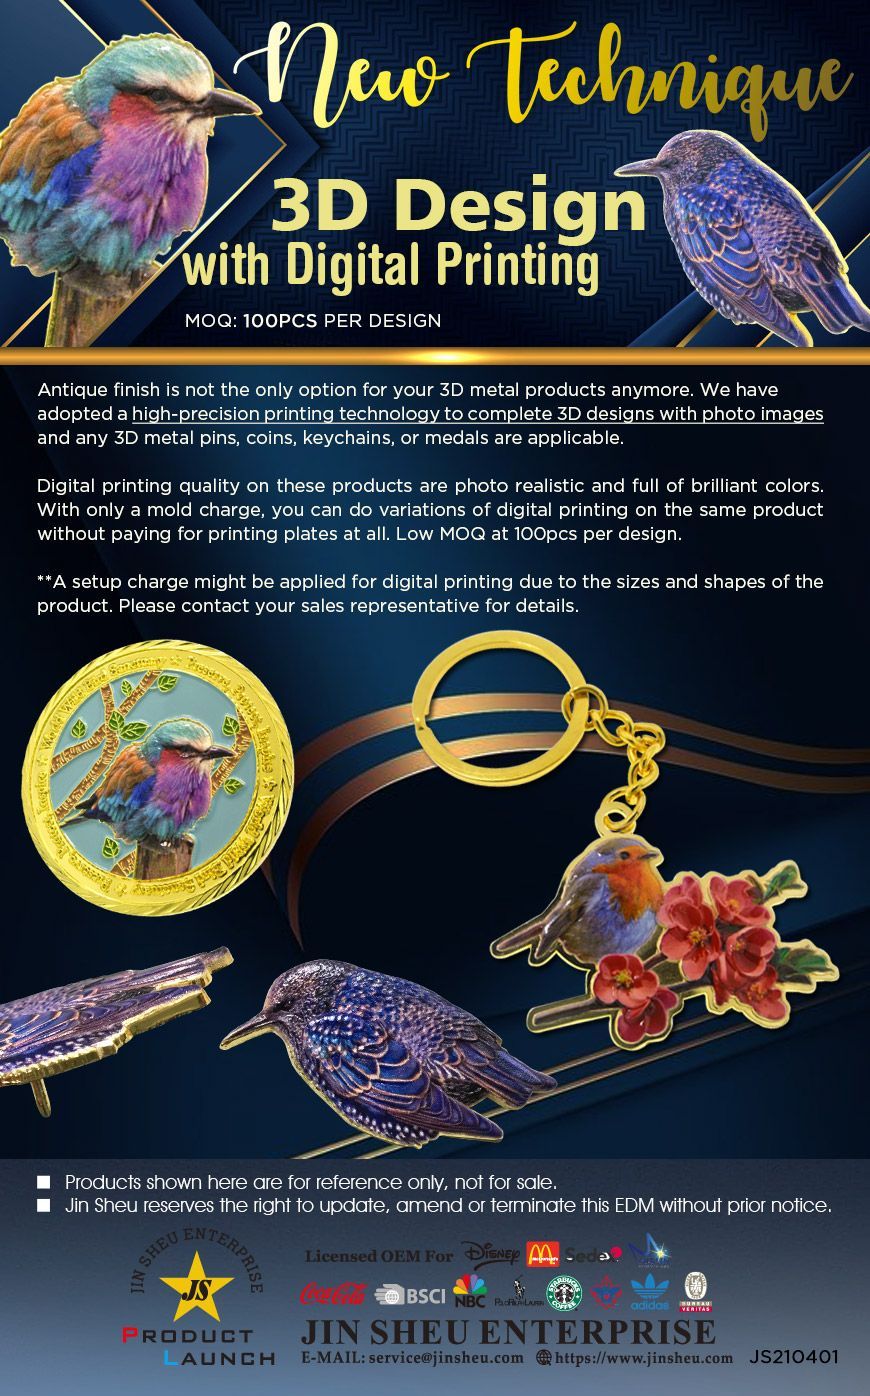 Souvenirs de metal personalizados en diseño 3D con impresión digital